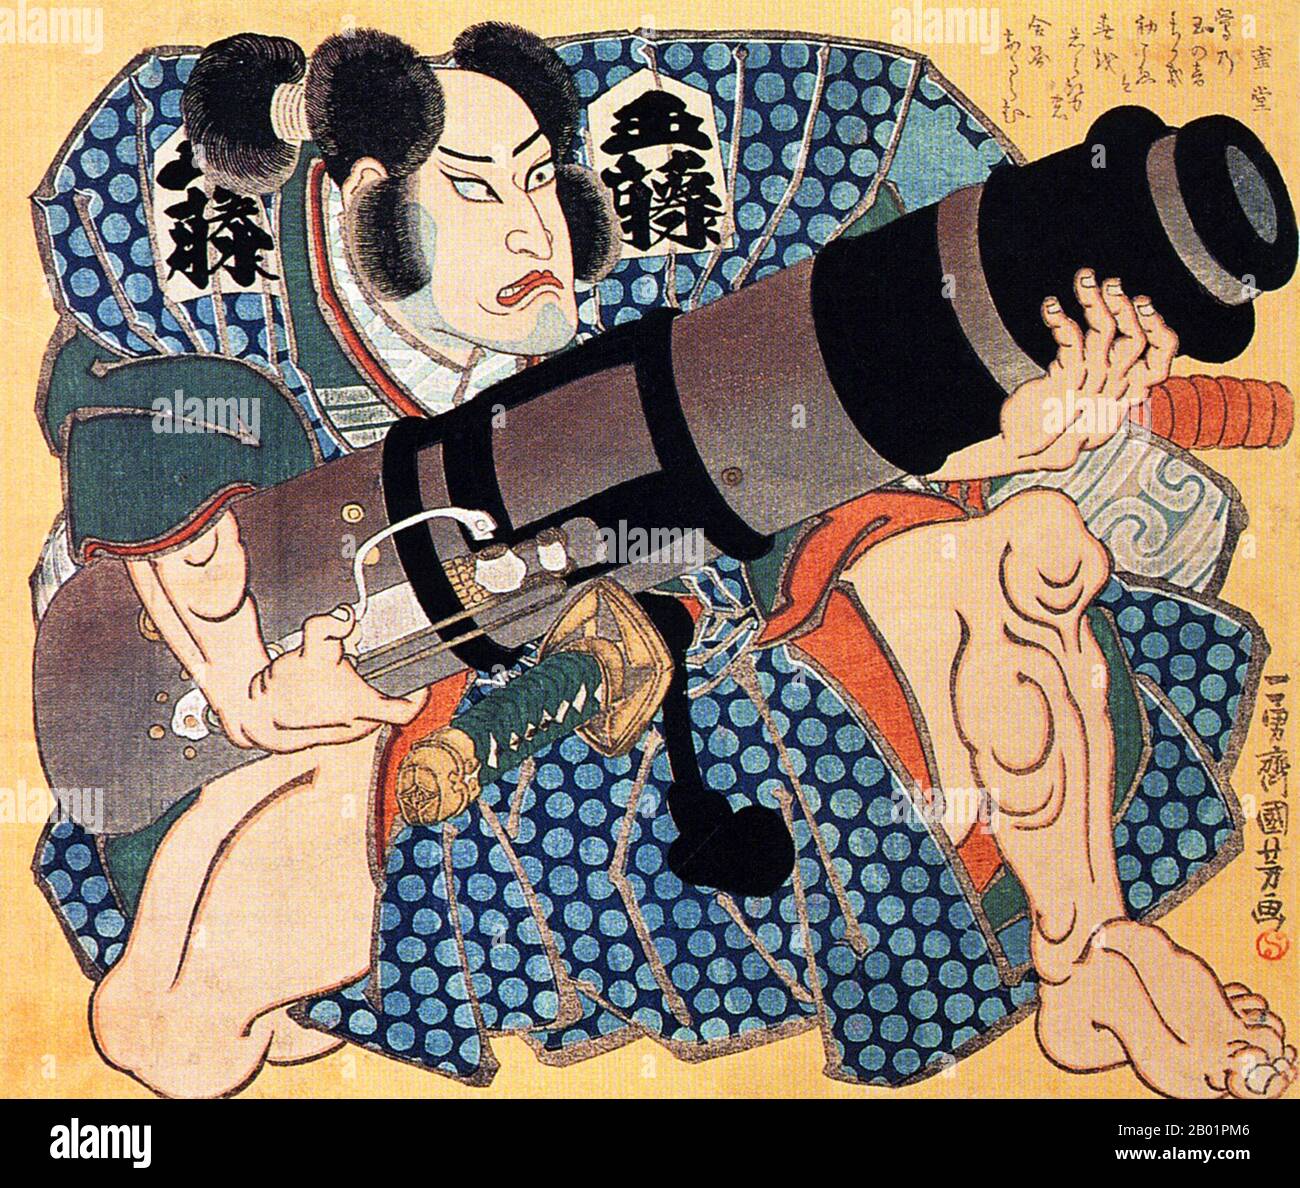 Japan: Schauspieler Nakamura Utaemon IV. Ruht auf einem Knie und hält einen Mörser. Ukiyo-e Holzschnitt von Utagawa Kuniyoshi (1. Januar 1797 - 14. April 1861), ca. 1845-1846. Utagawa Kuniyoshi war einer der letzten großen Meister des japanischen Ukiyo-e-Stils der Holzschnitte und Malerei. Er ist mit der Utagawa-Schule verbunden. Das Spektrum der bevorzugten Themen von Kuniyoshi umfasste viele Genres: Landschaften, schöne Frauen, Kabuki-Schauspieler, Katzen und mythische Tiere. Er ist bekannt für seine Darstellungen der Schlachten von Samurai und legendären Helden. Sein Kunstwerk wurde von westlichen Einflüssen in die Landschaft beeinflusst Stockfoto